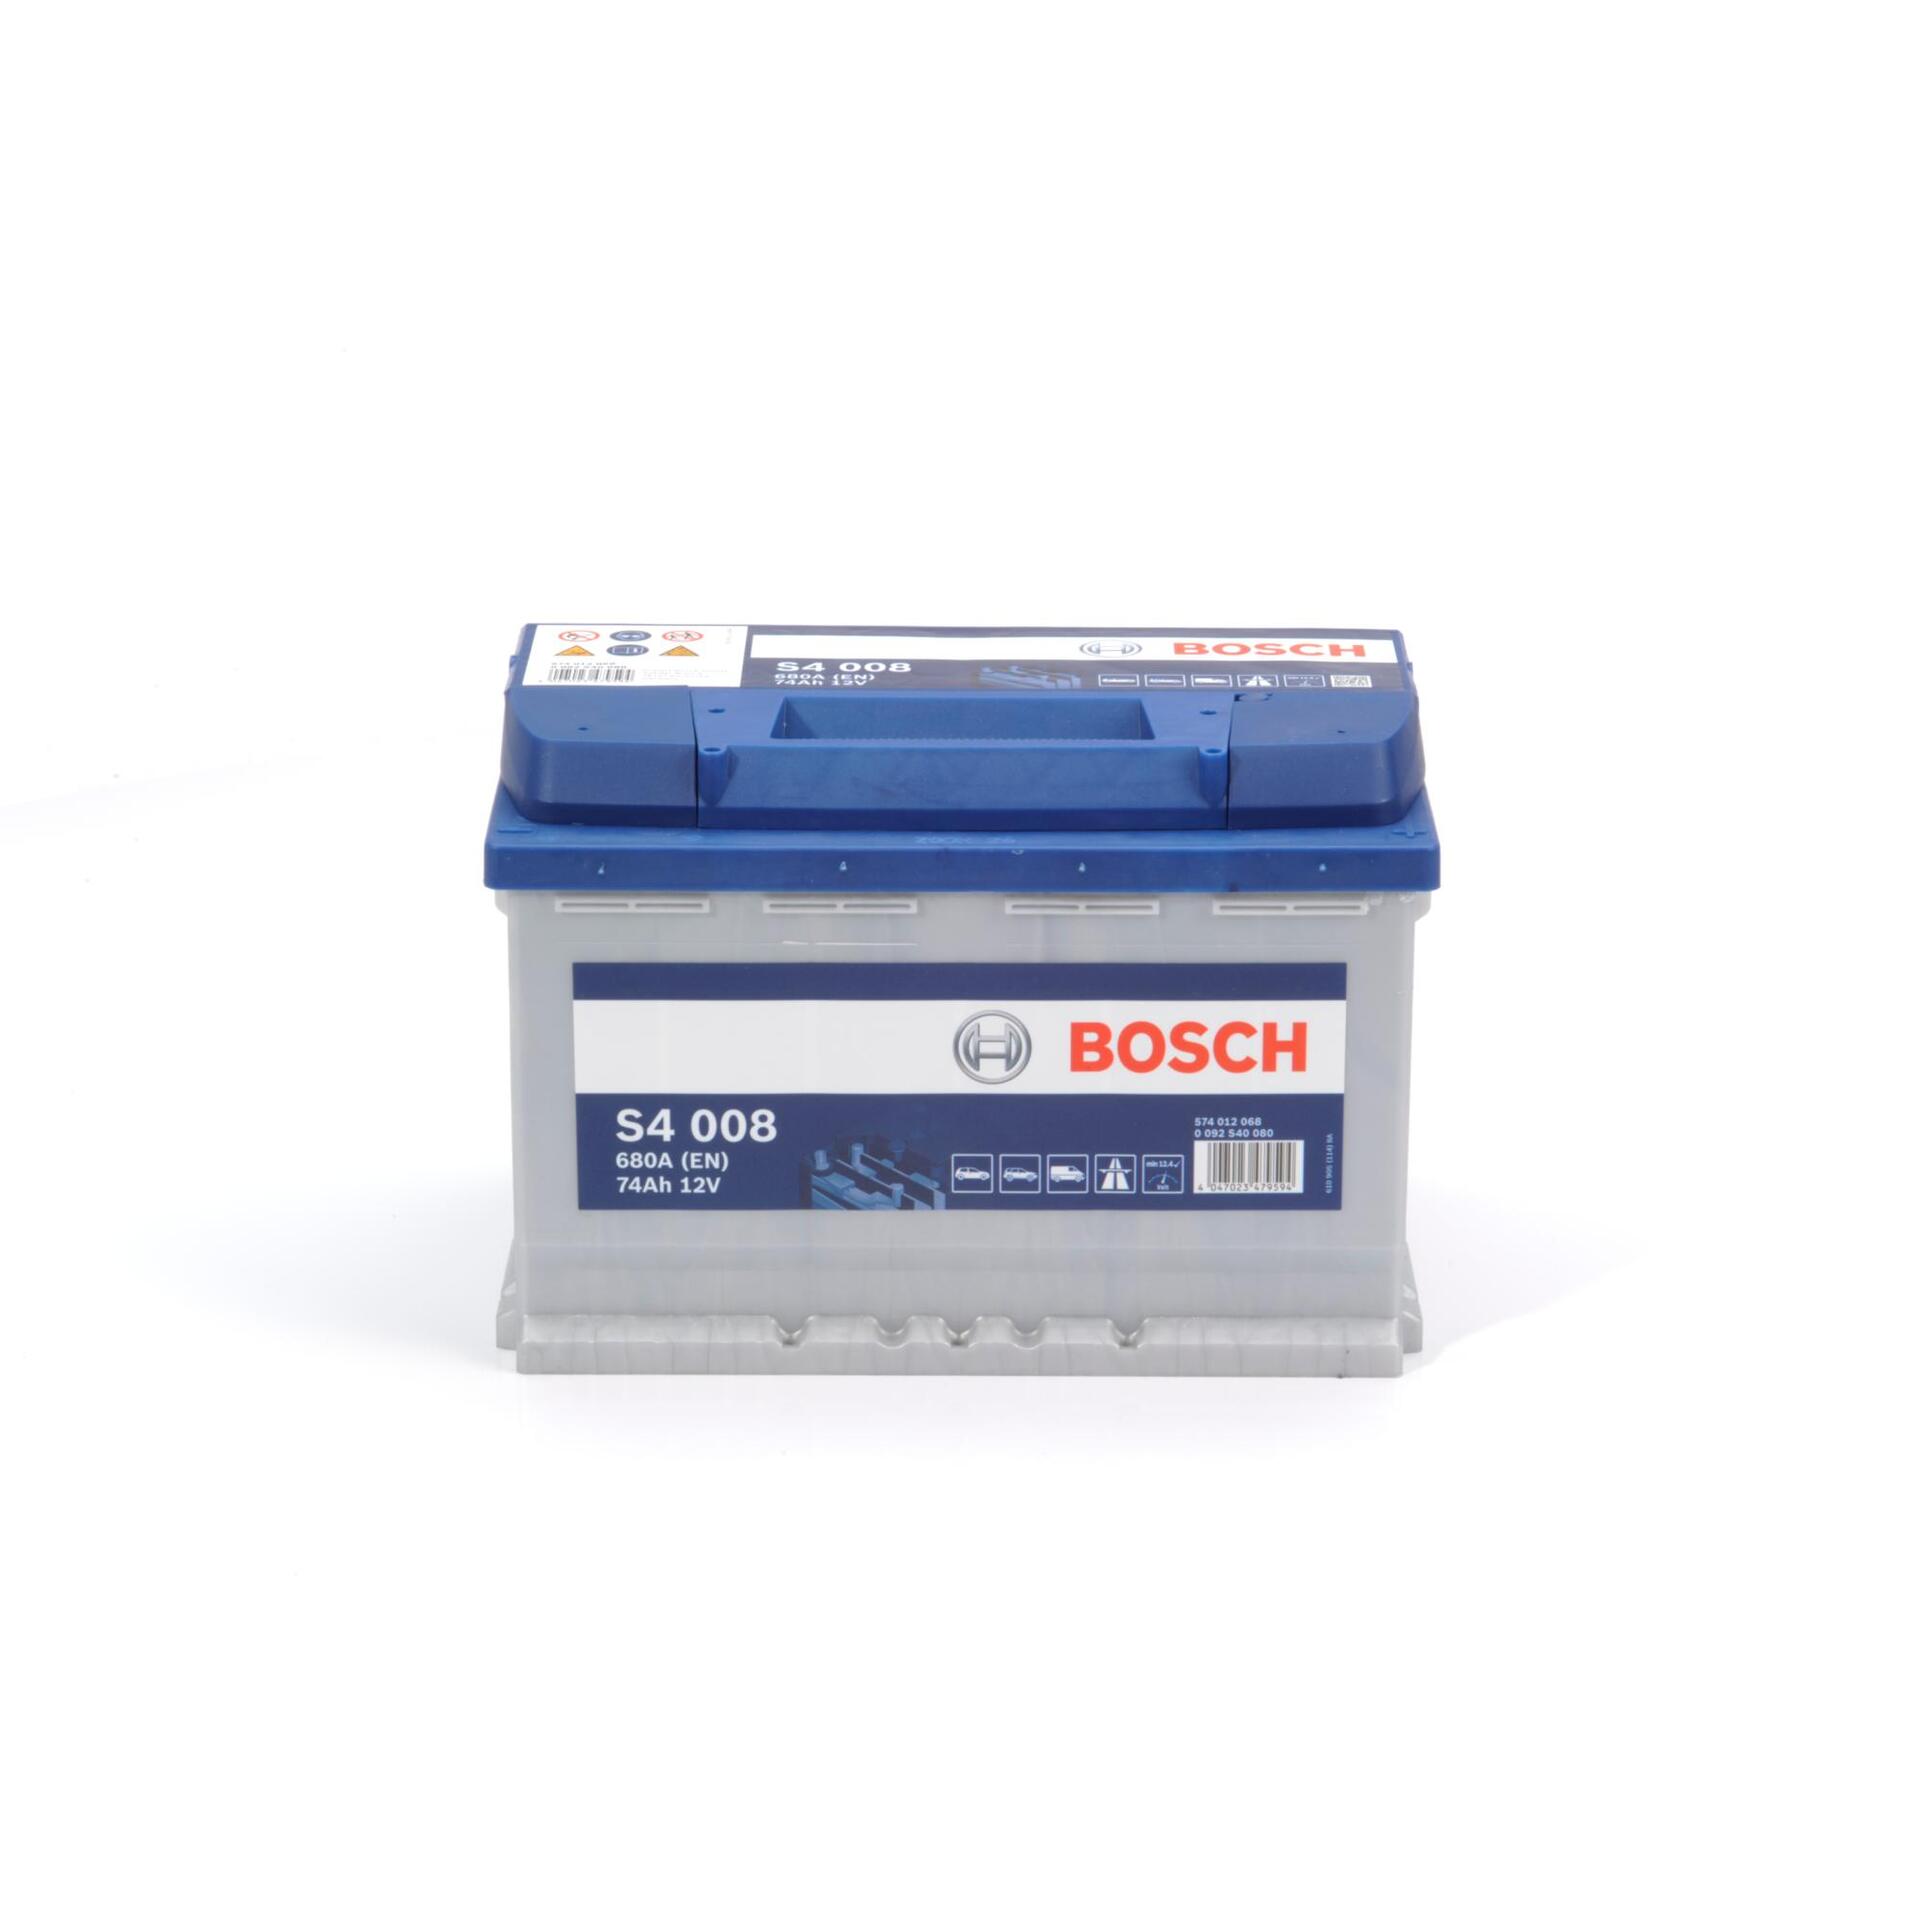 Bosch Batterie S4 KSN 74Ah-680A - Kapazität: S4 008 - Leitermann